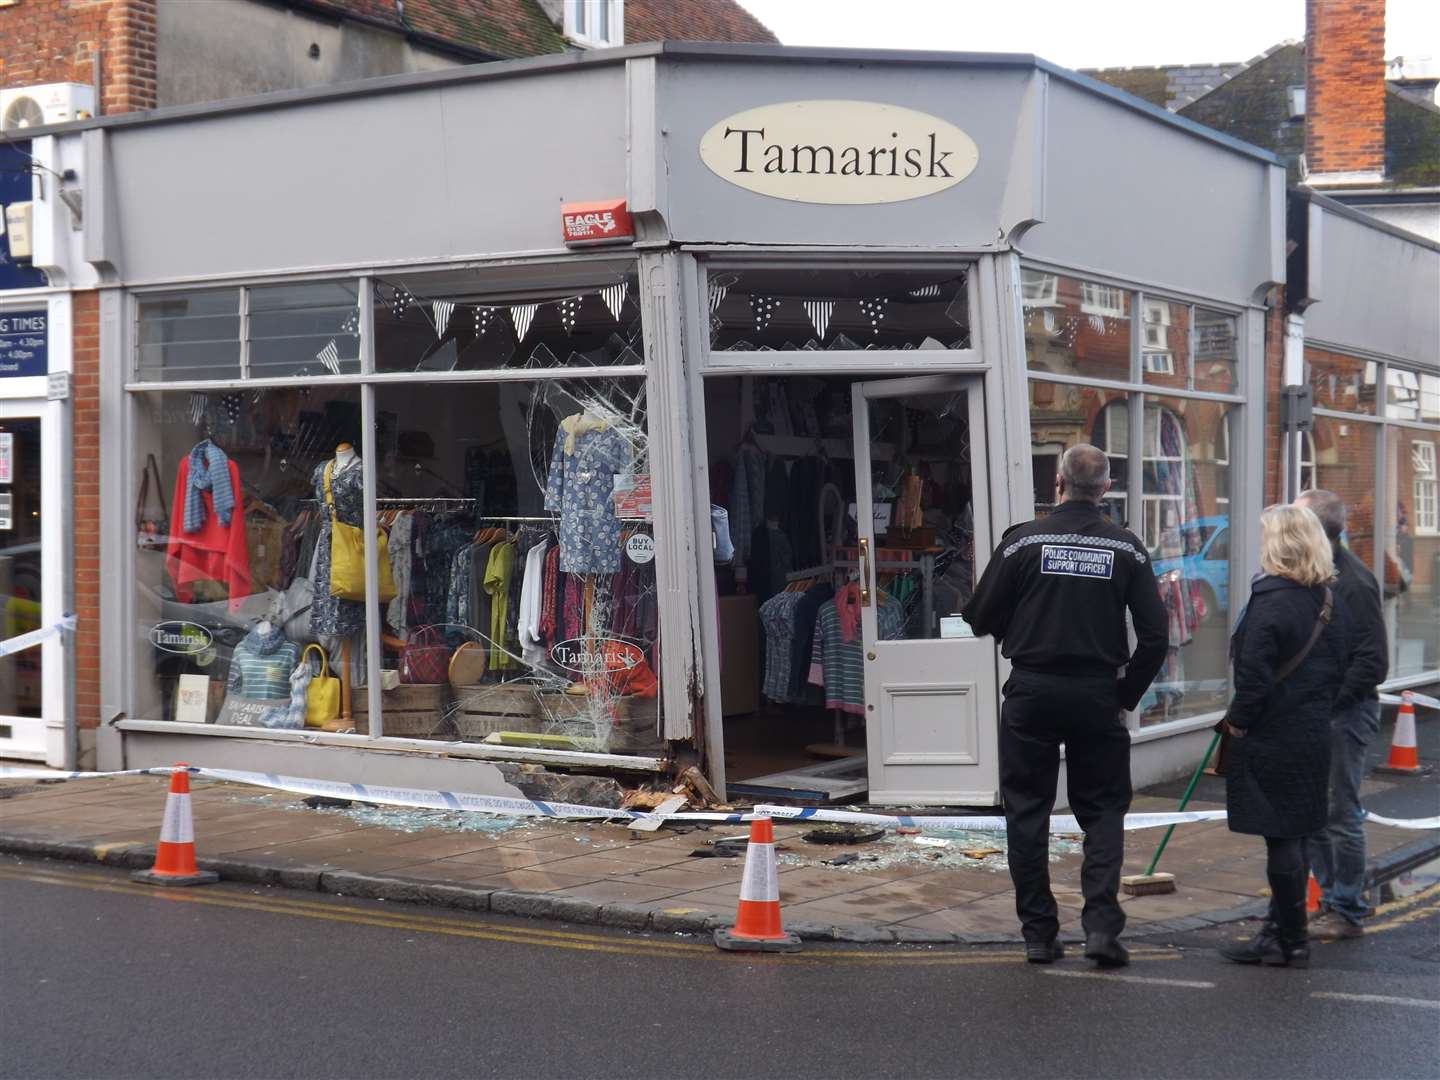 Damage after car smashed into Tamarisk